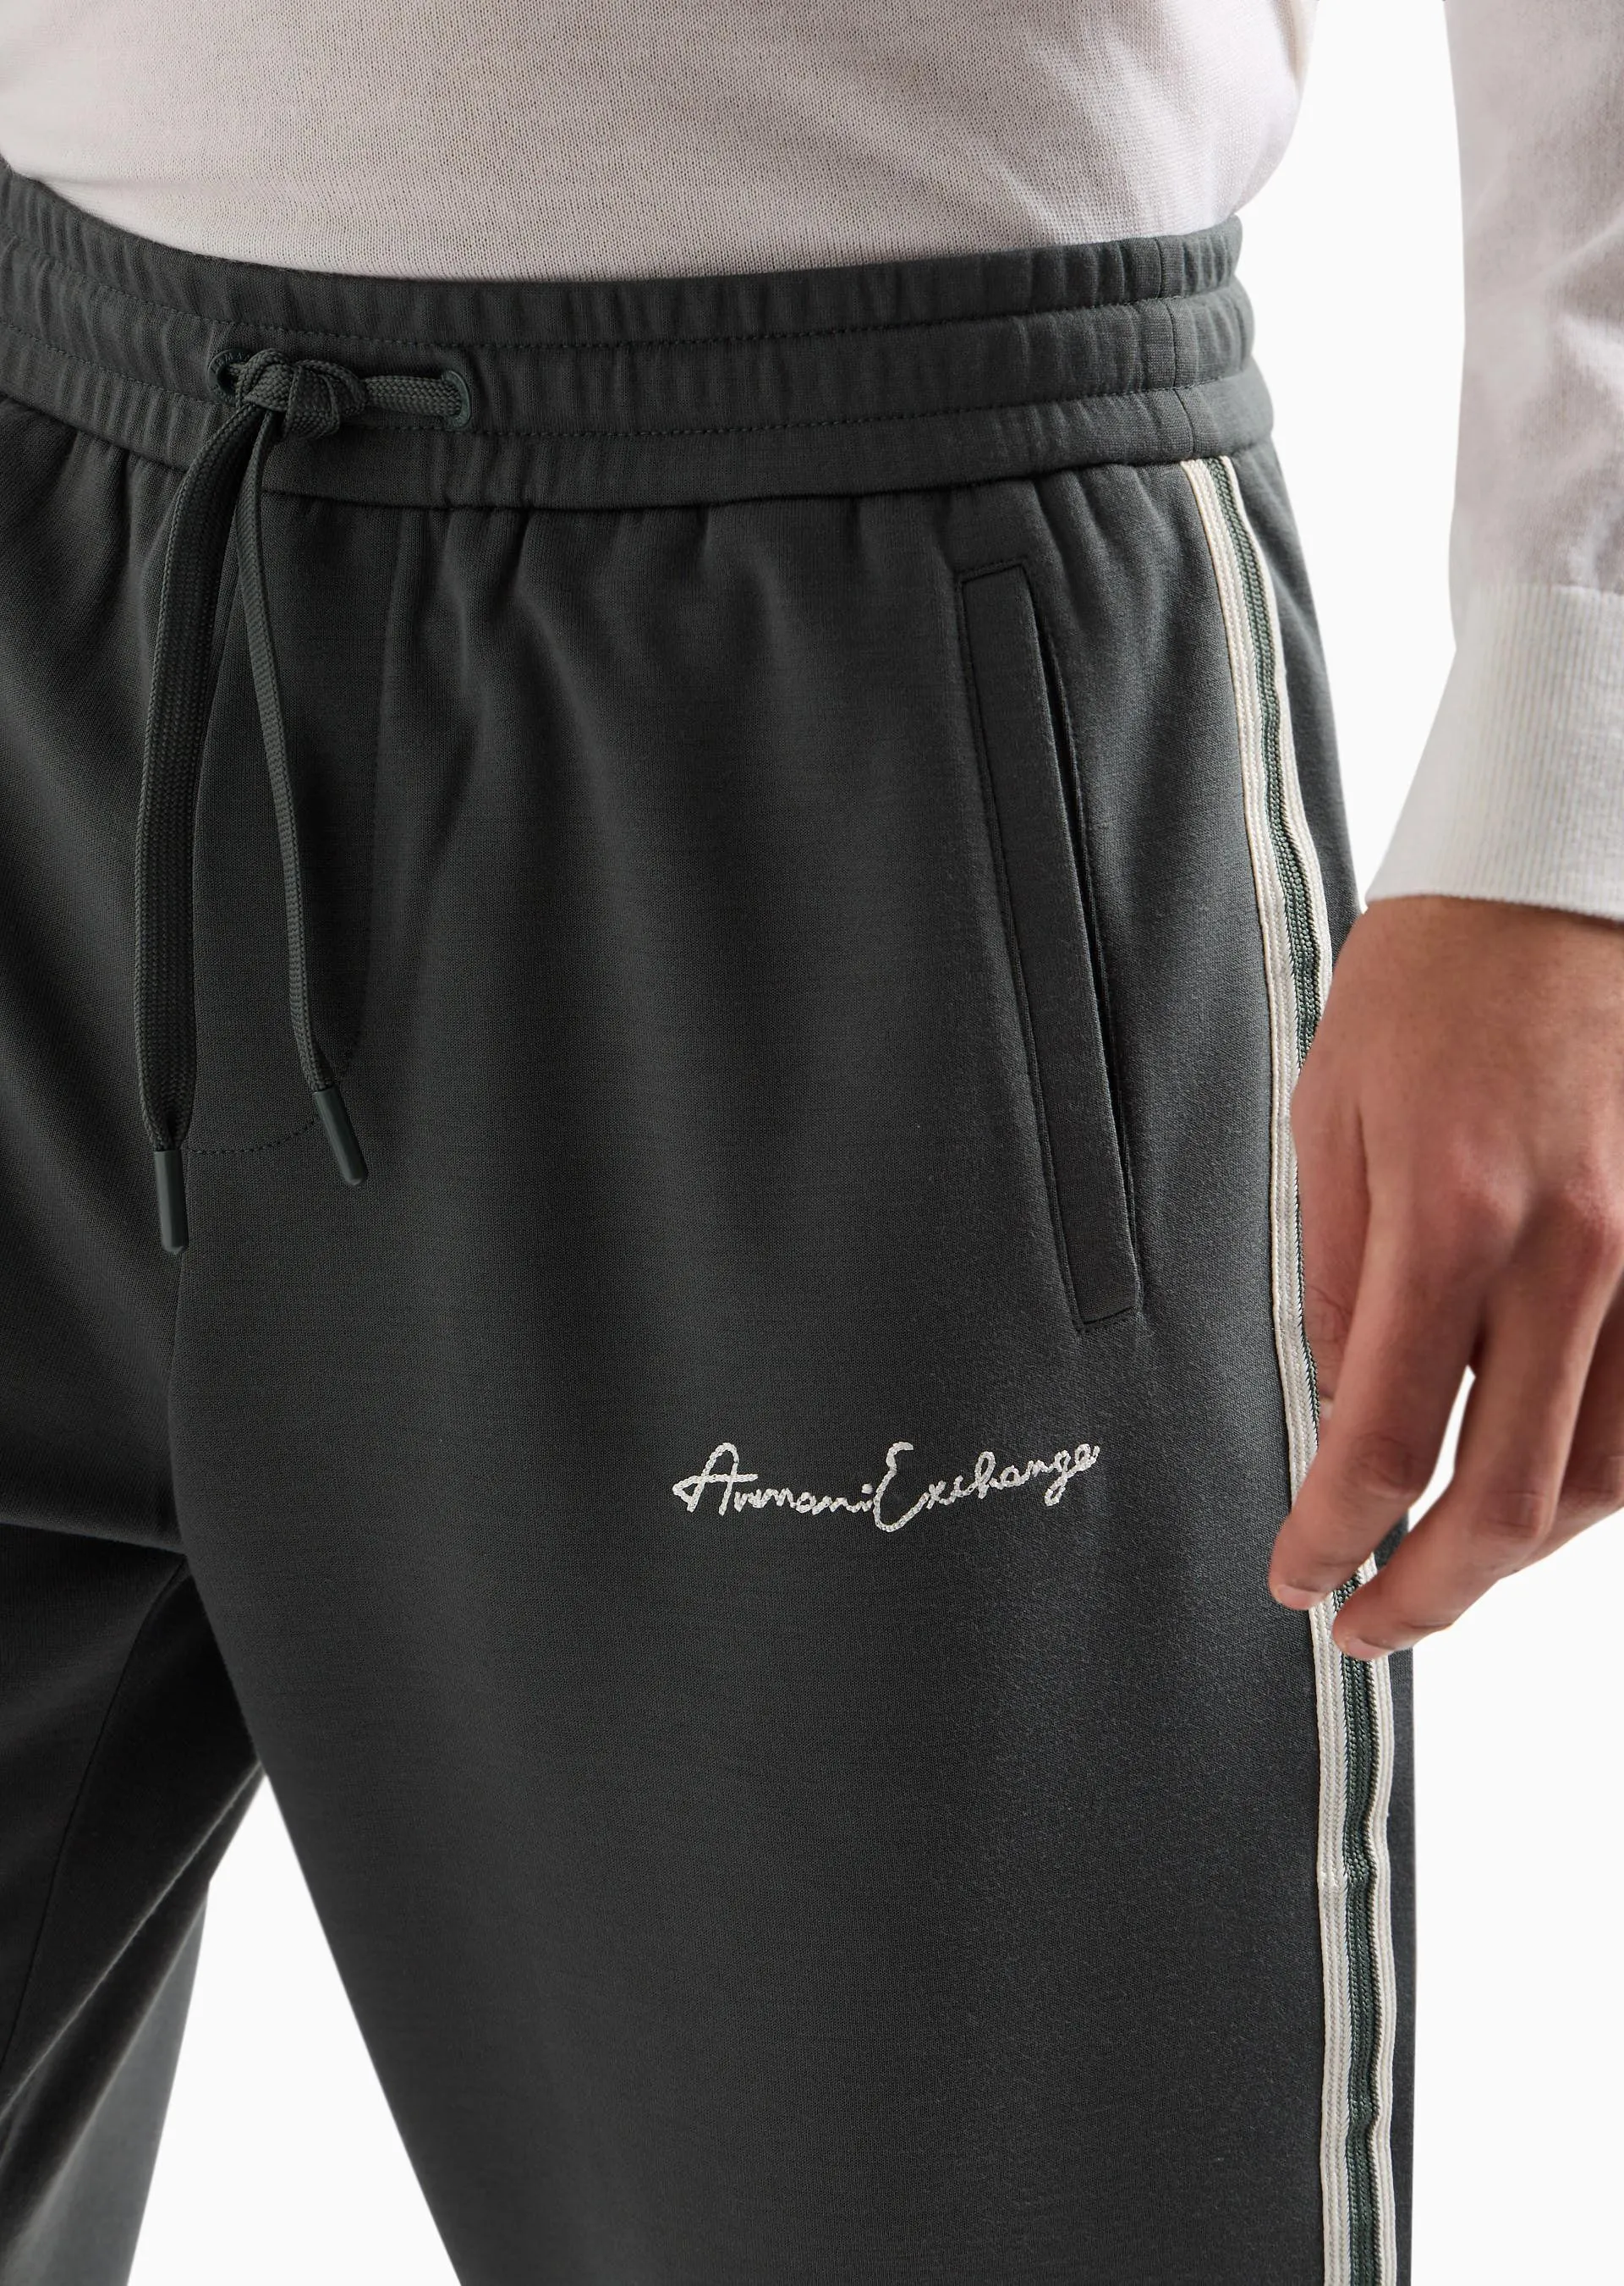 Pantalones jogger con logo distintivo